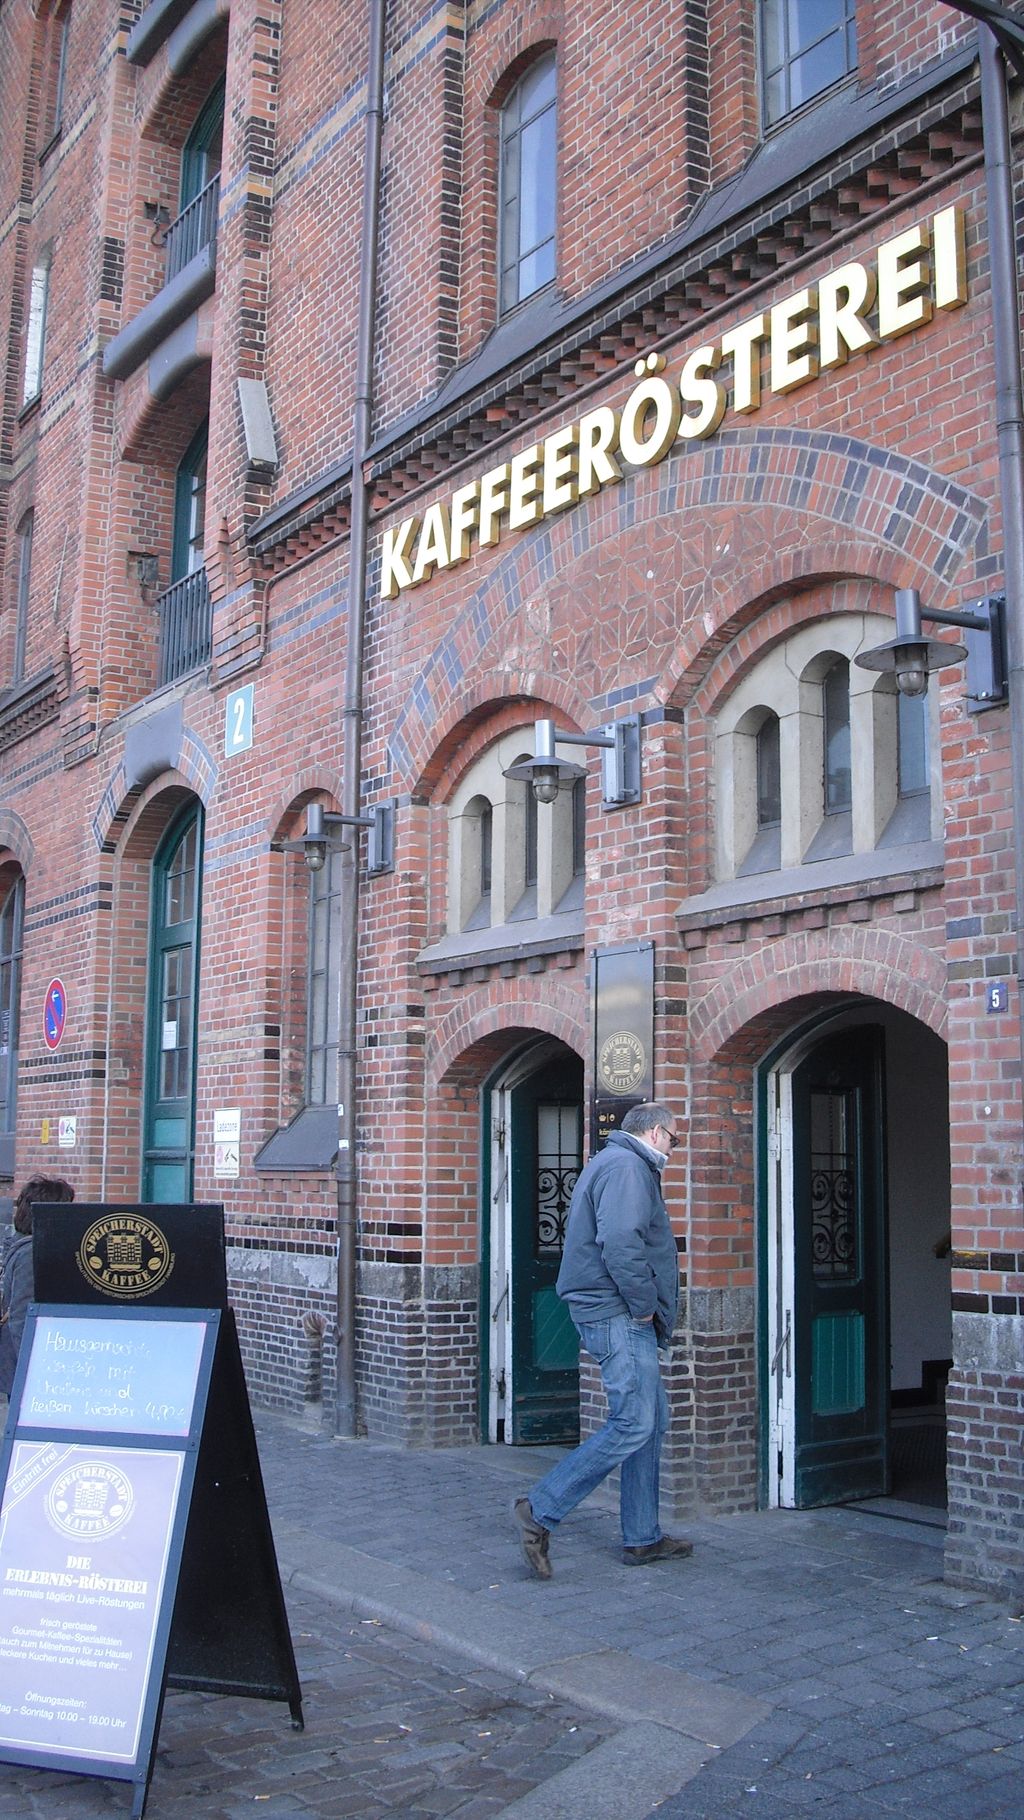 Nutzerfoto 42 Speicherstadt Kaffeerösterei